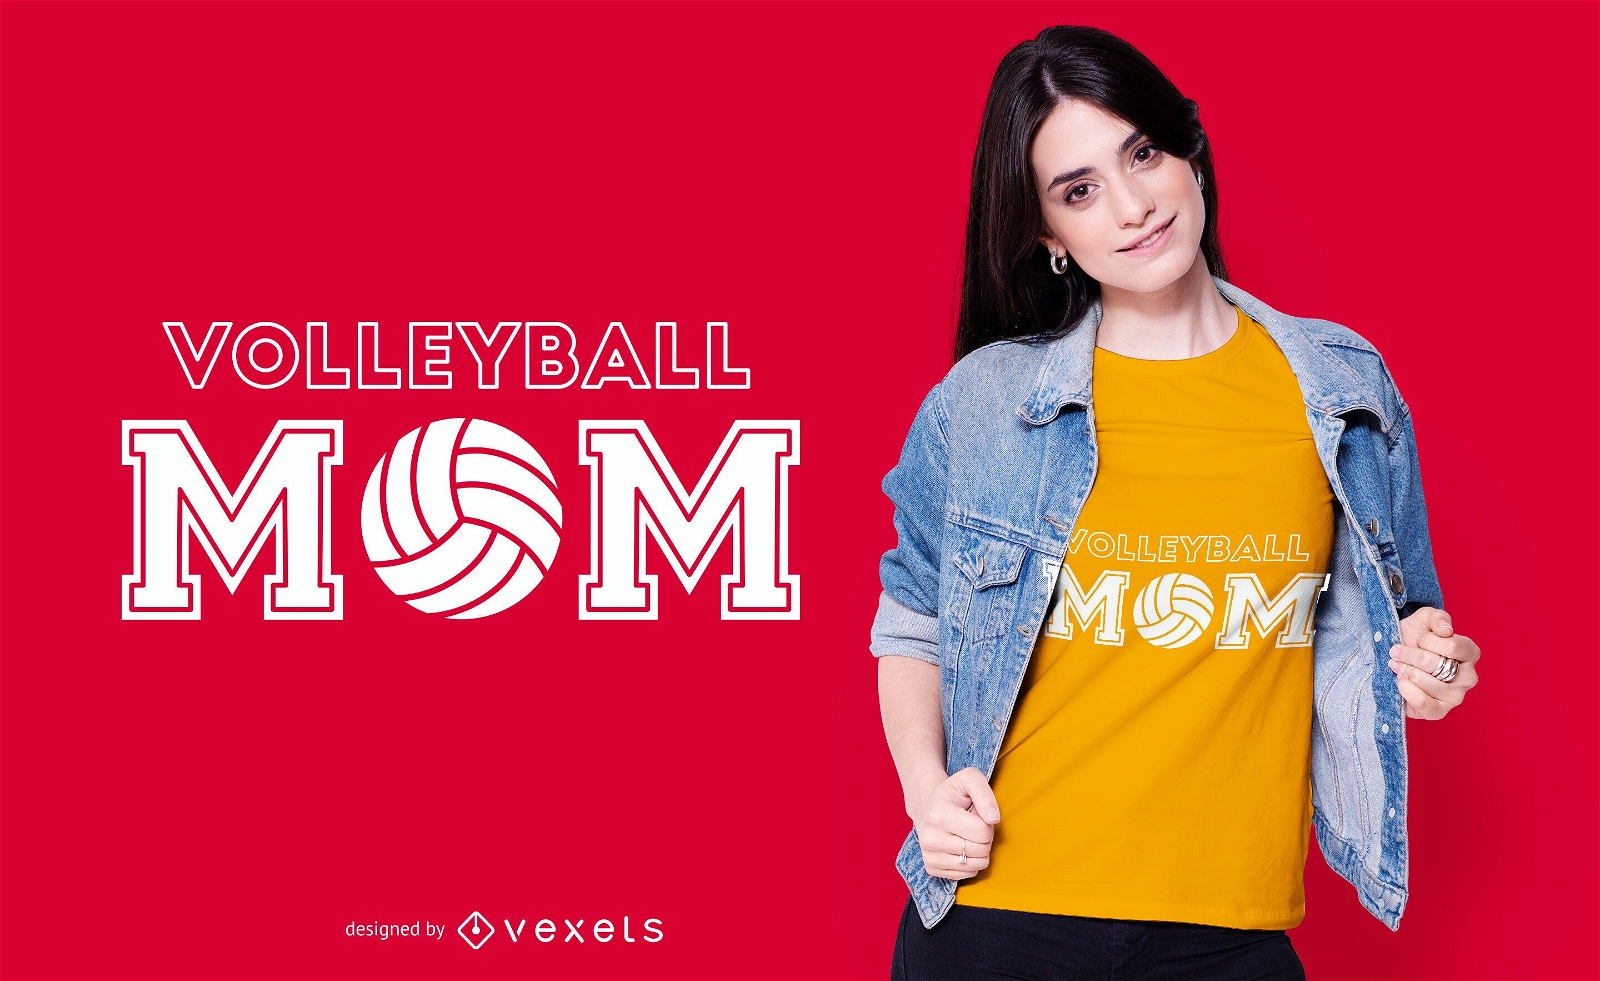 Dise?o de camiseta de mam? de voleibol